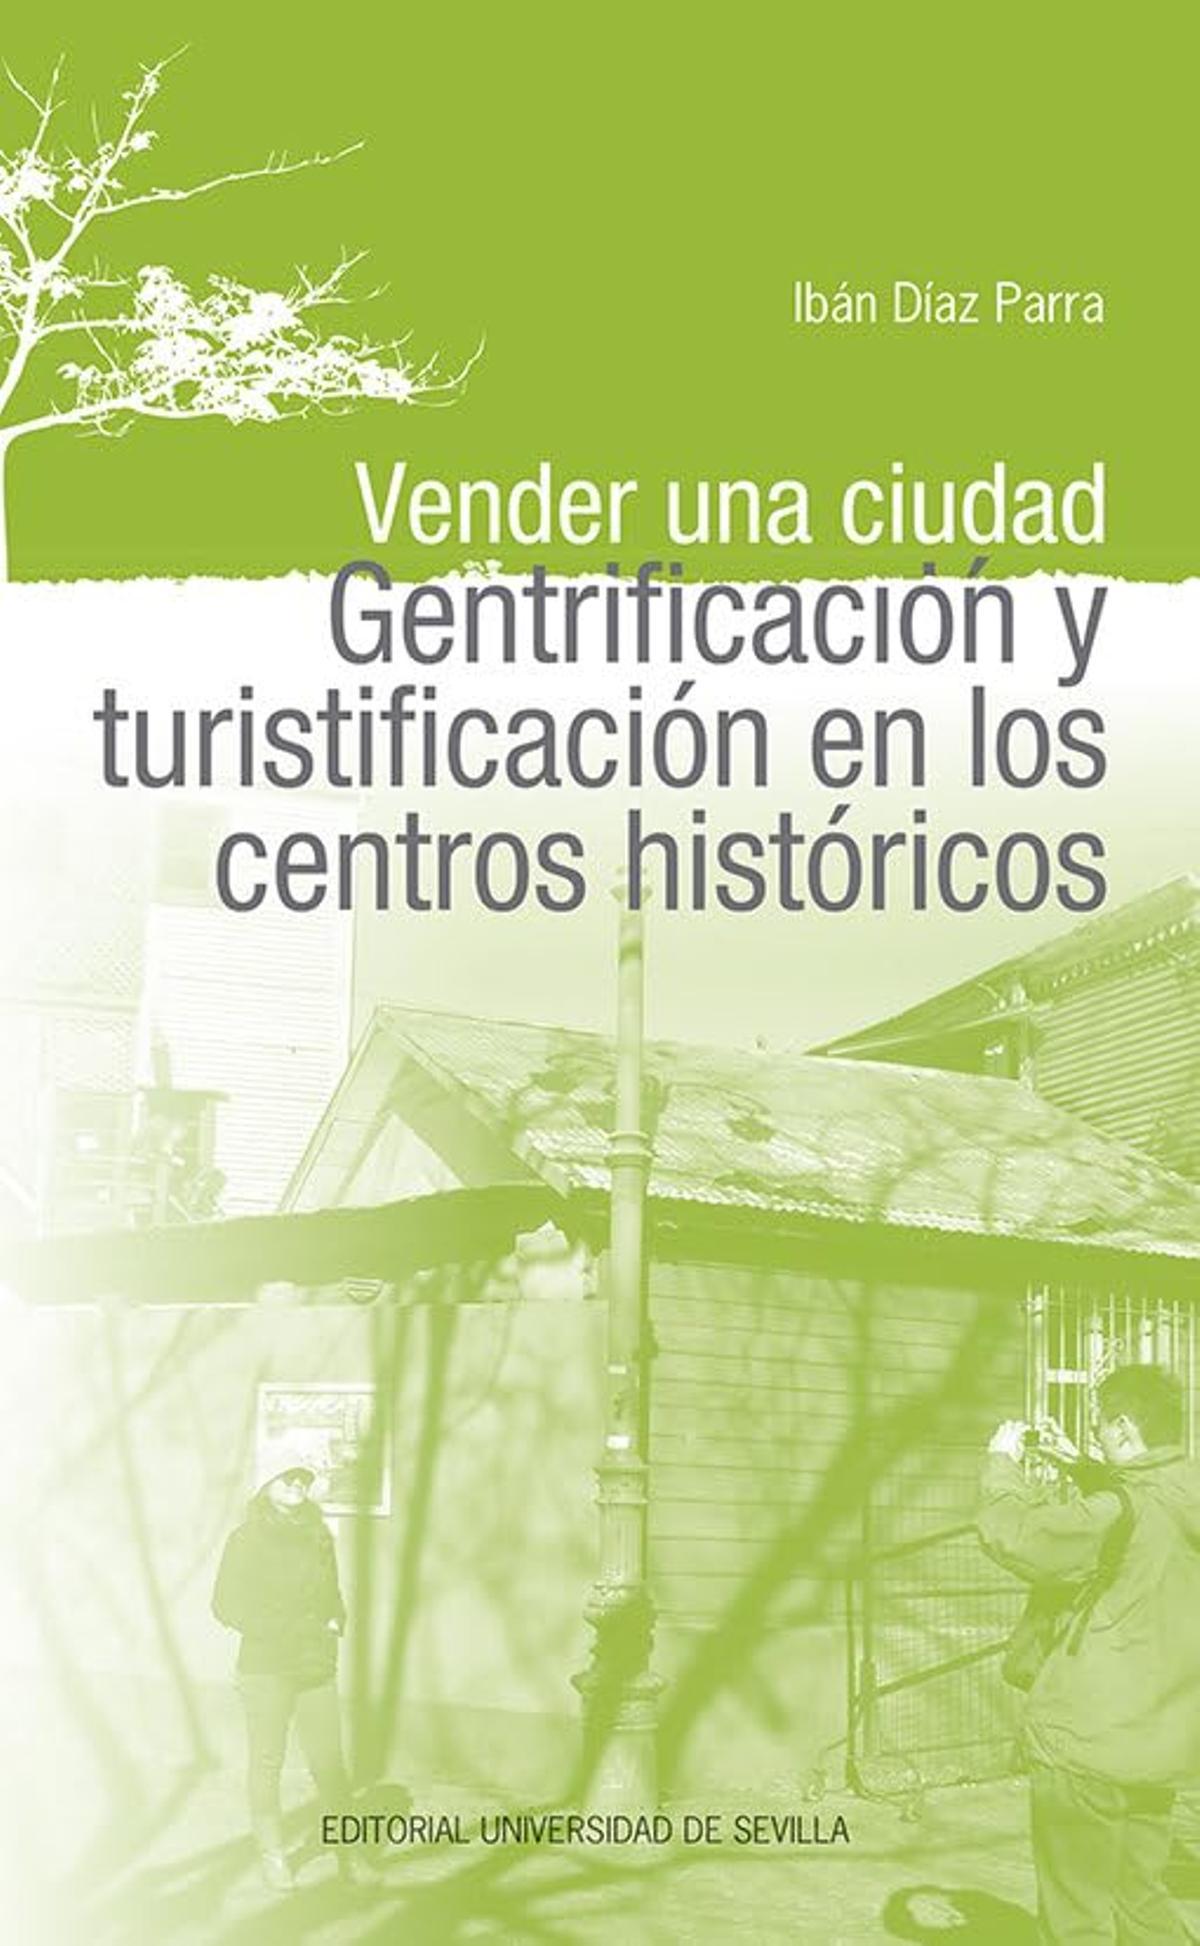 Portada del libro 'Vender una ciudad. Gentrificación y Turistificación en los Centros Históricos' (Universidad de Sevilla), de Ibán Díaz.